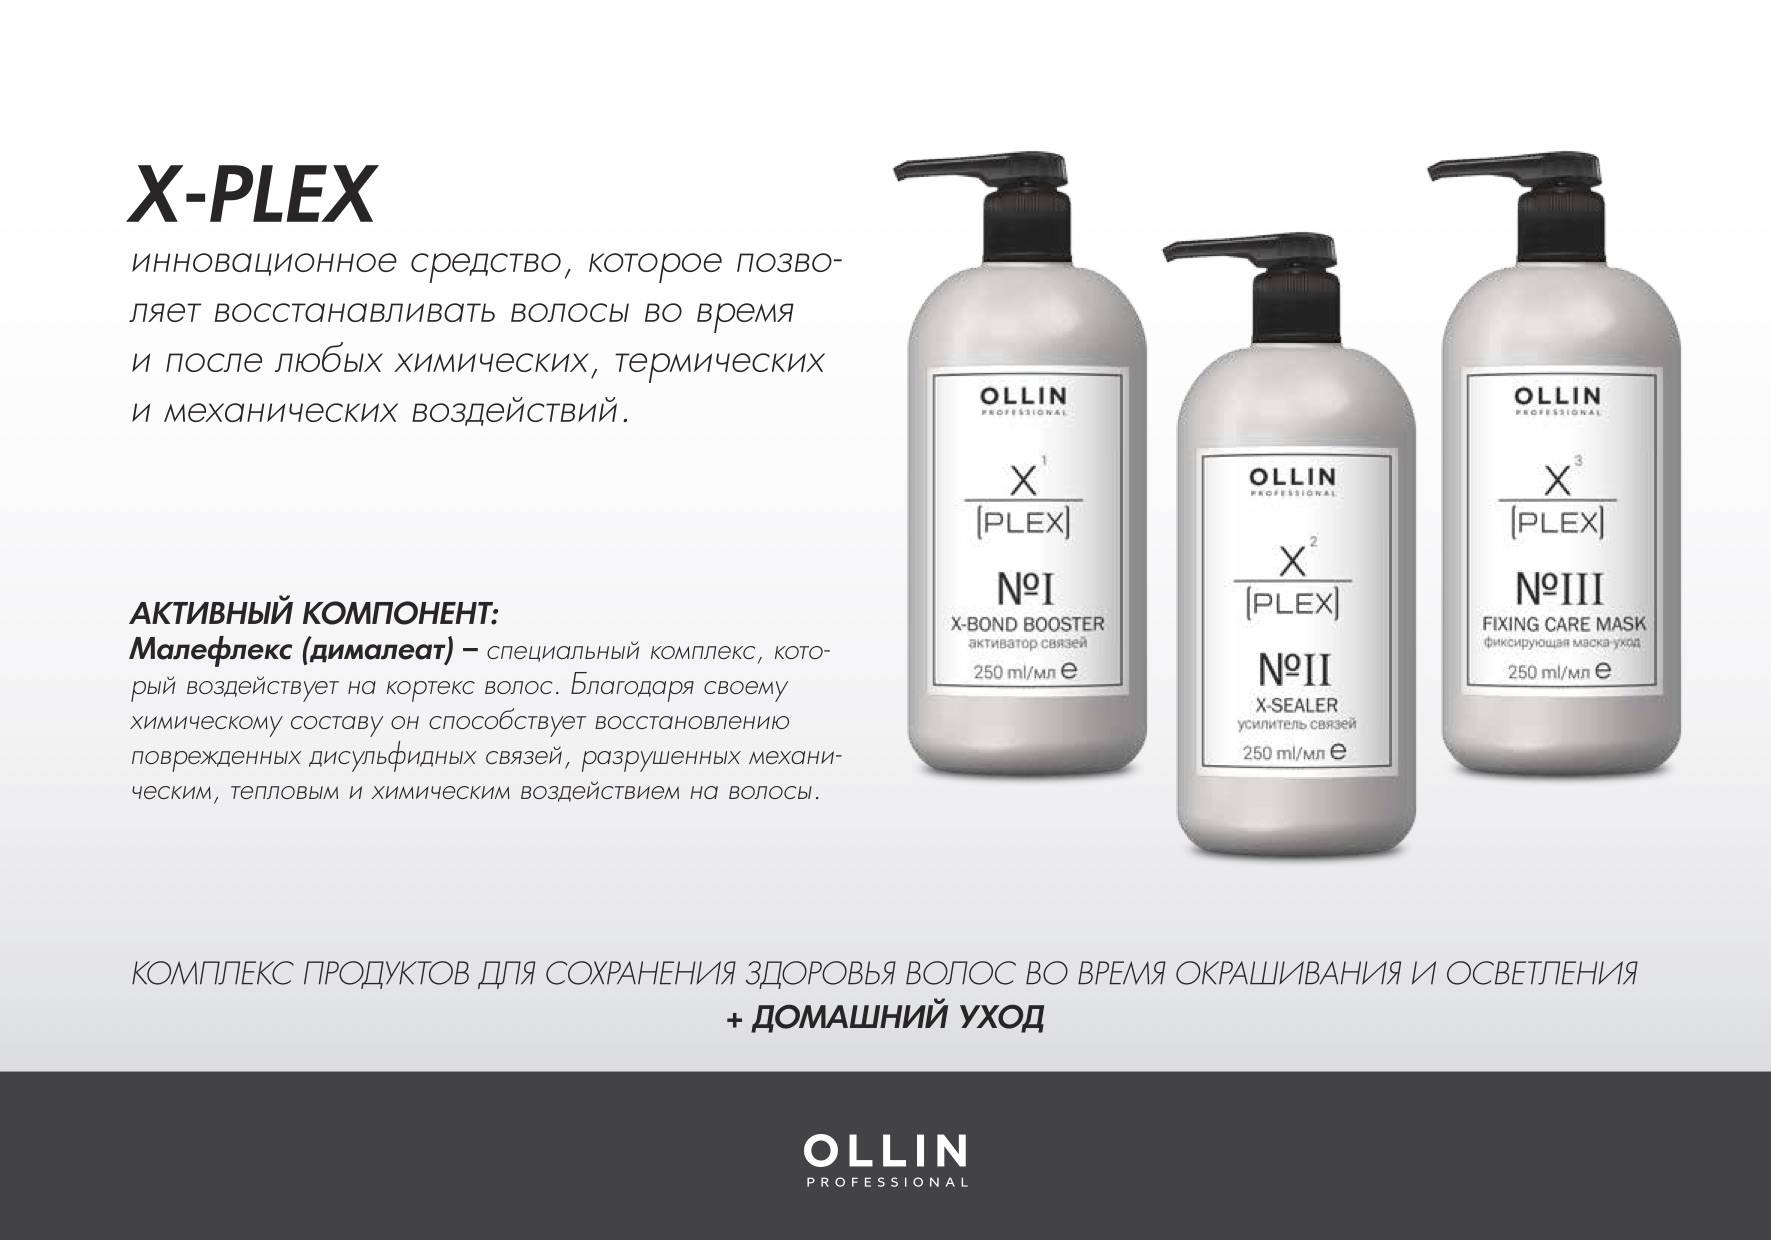 Средства для волос нова. Ollin x-Plex набор. Plex Ollin для волос. Ollin, набор №1 (активатор связей 1х250 мл; усилитель связей 2х250 мл) x-Plex. Ollin professional x-Plex x-Sealer no2.